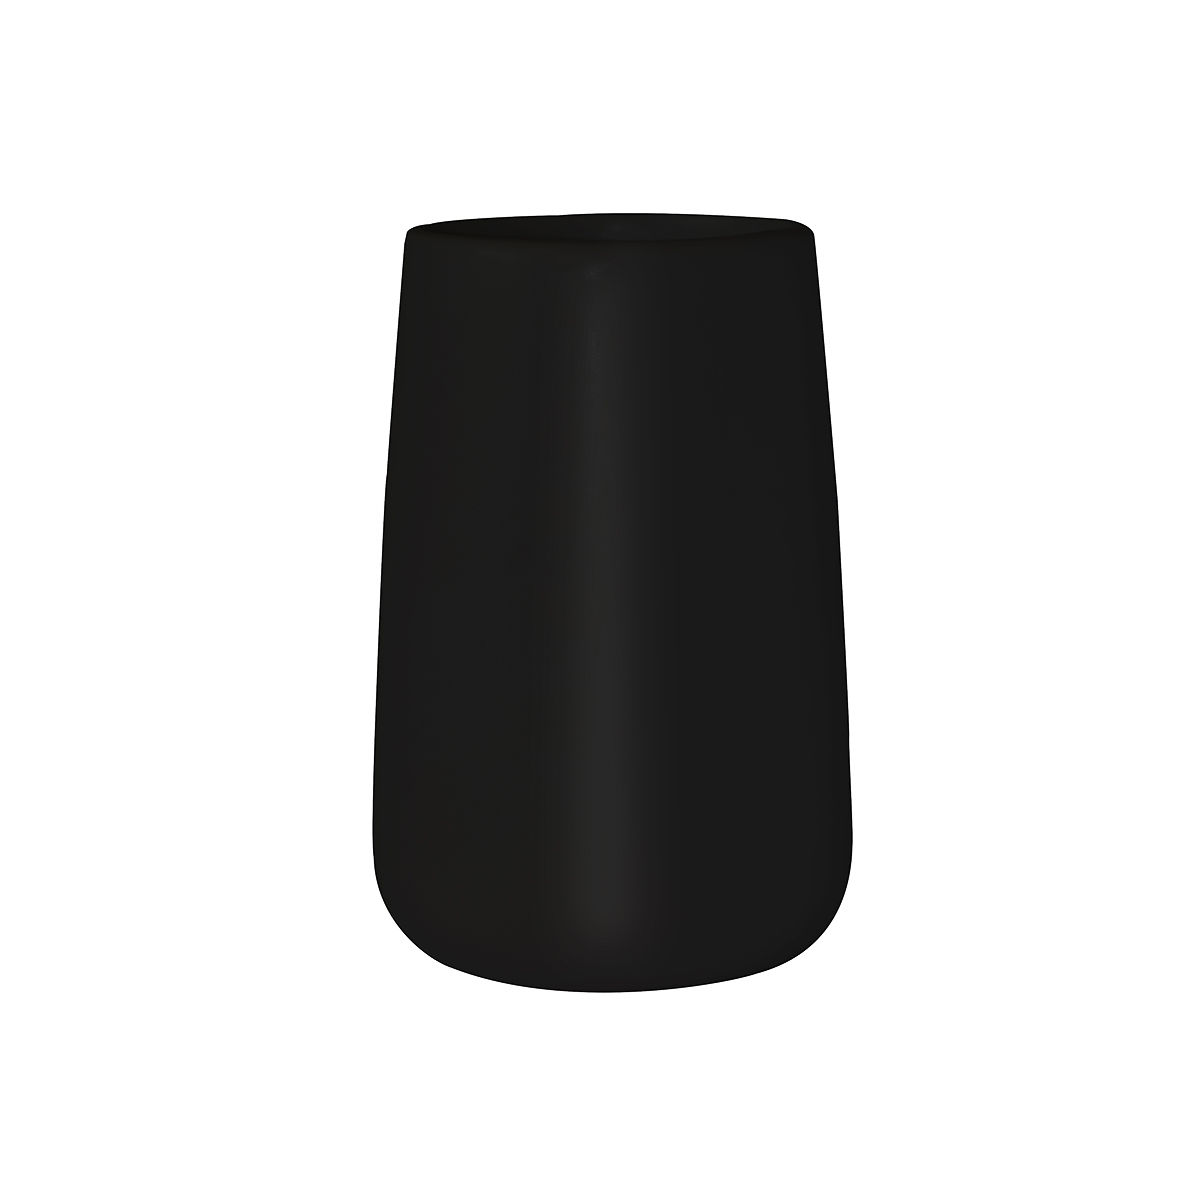 Ποτηροθήκη Πορσελάνης Μαύρη Bamboo Estia 8,7×8,7×13εκ. 02-4606 (Υλικό: Πορσελάνη, Χρώμα: Μαύρο) – estia – 02-4606